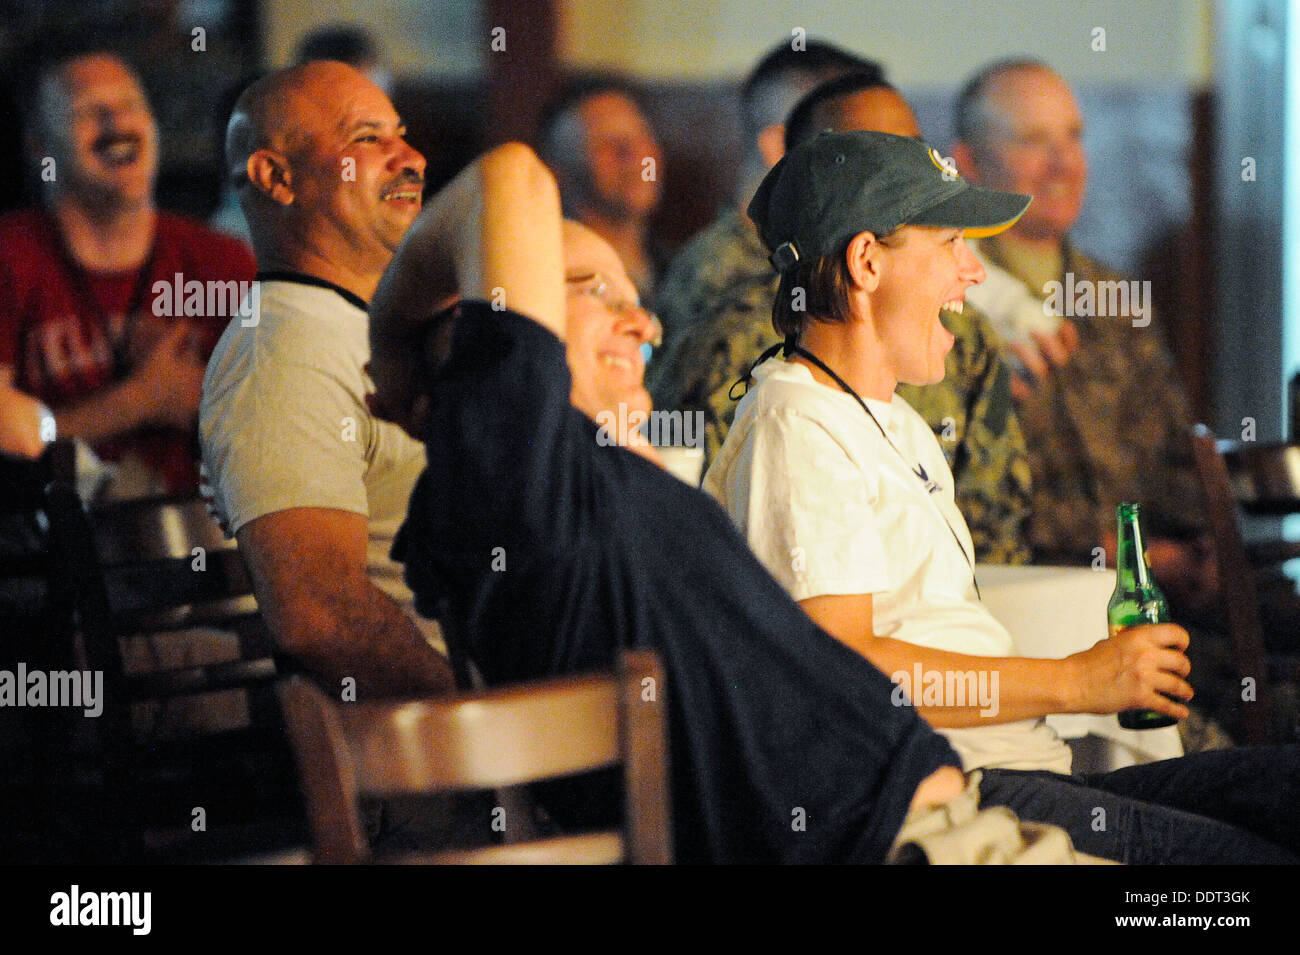 CAMP LEMONNIER, Gibuti (sett. 4, 2013) il pubblico a ridere durante la prestazione della battaglia inni e la sua Visita commedia a Camp Lemonnier. Foto Stock